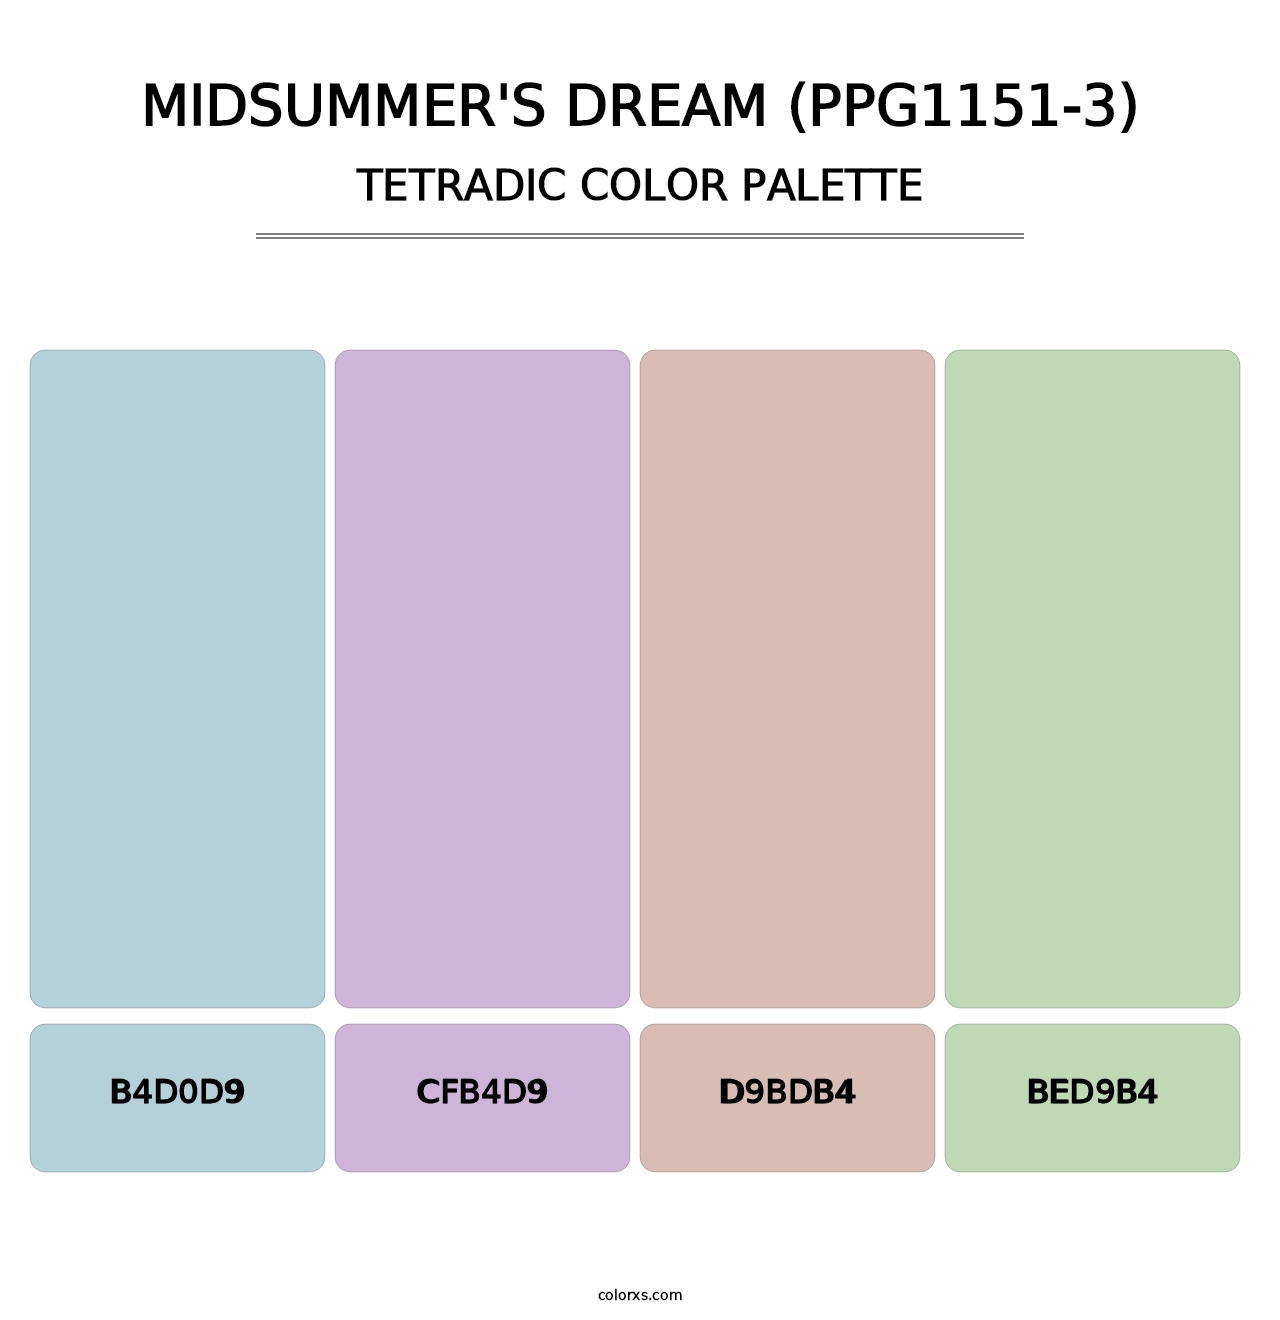 Midsummer's Dream (PPG1151-3) - Tetradic Color Palette